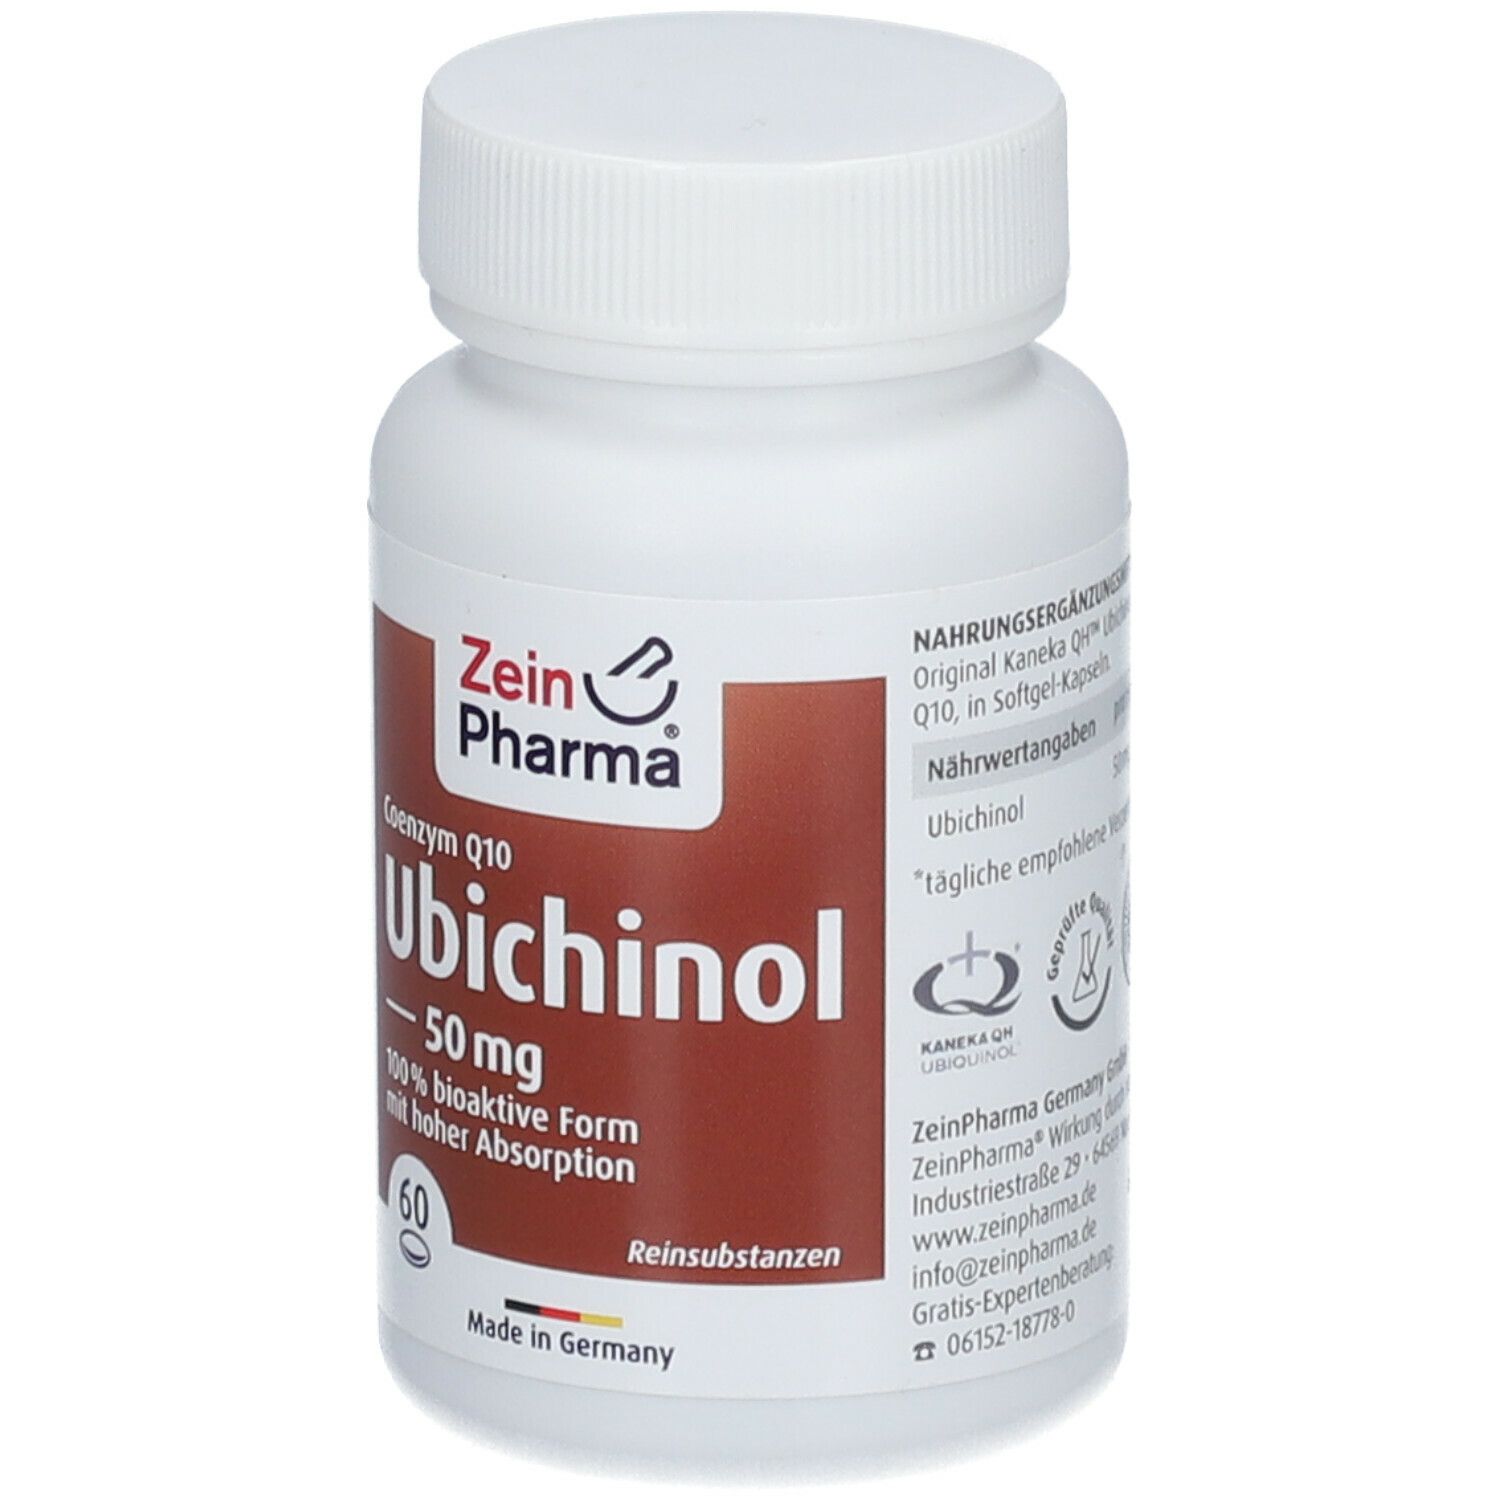 ZeinPharma® Ubichinol Coenzym Q10 Kapseln 50 mg